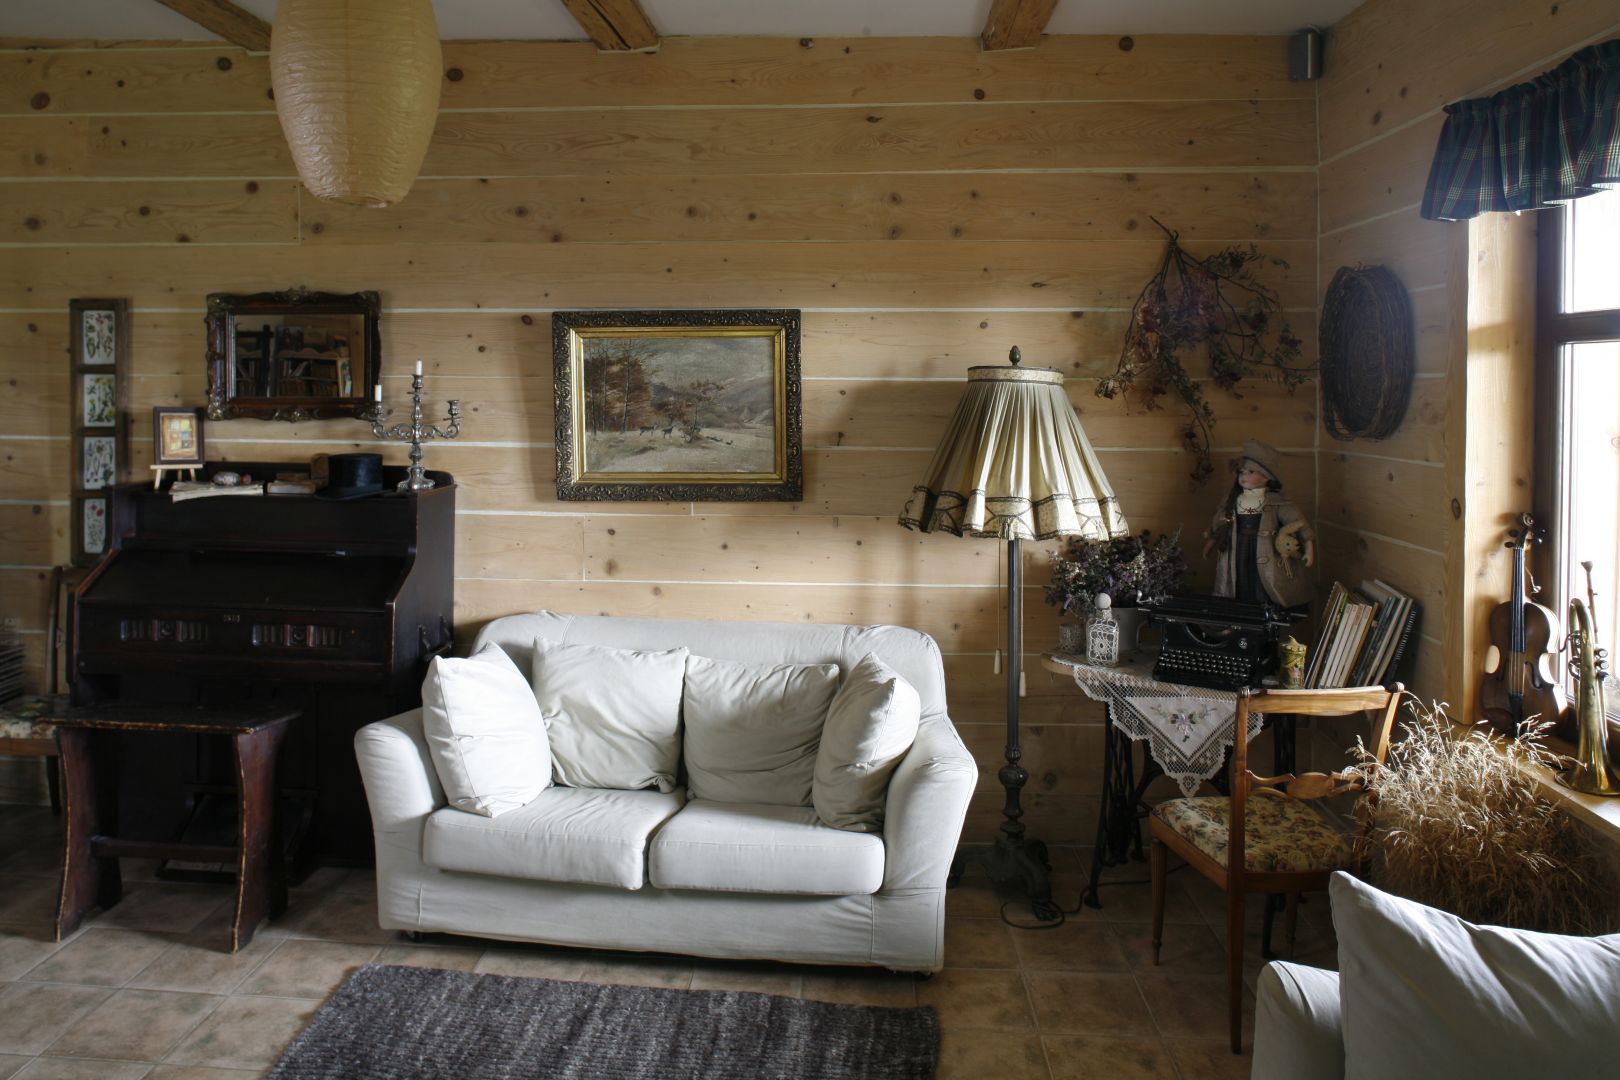 Ten salon to prawdziwe serce domu. Wrażenie przytulności potęgują drewniane ściany ozdobione obrazami w stylizowanych ramach. Projekt: Magda Lutowiska Fot. Bartosz Jarosz